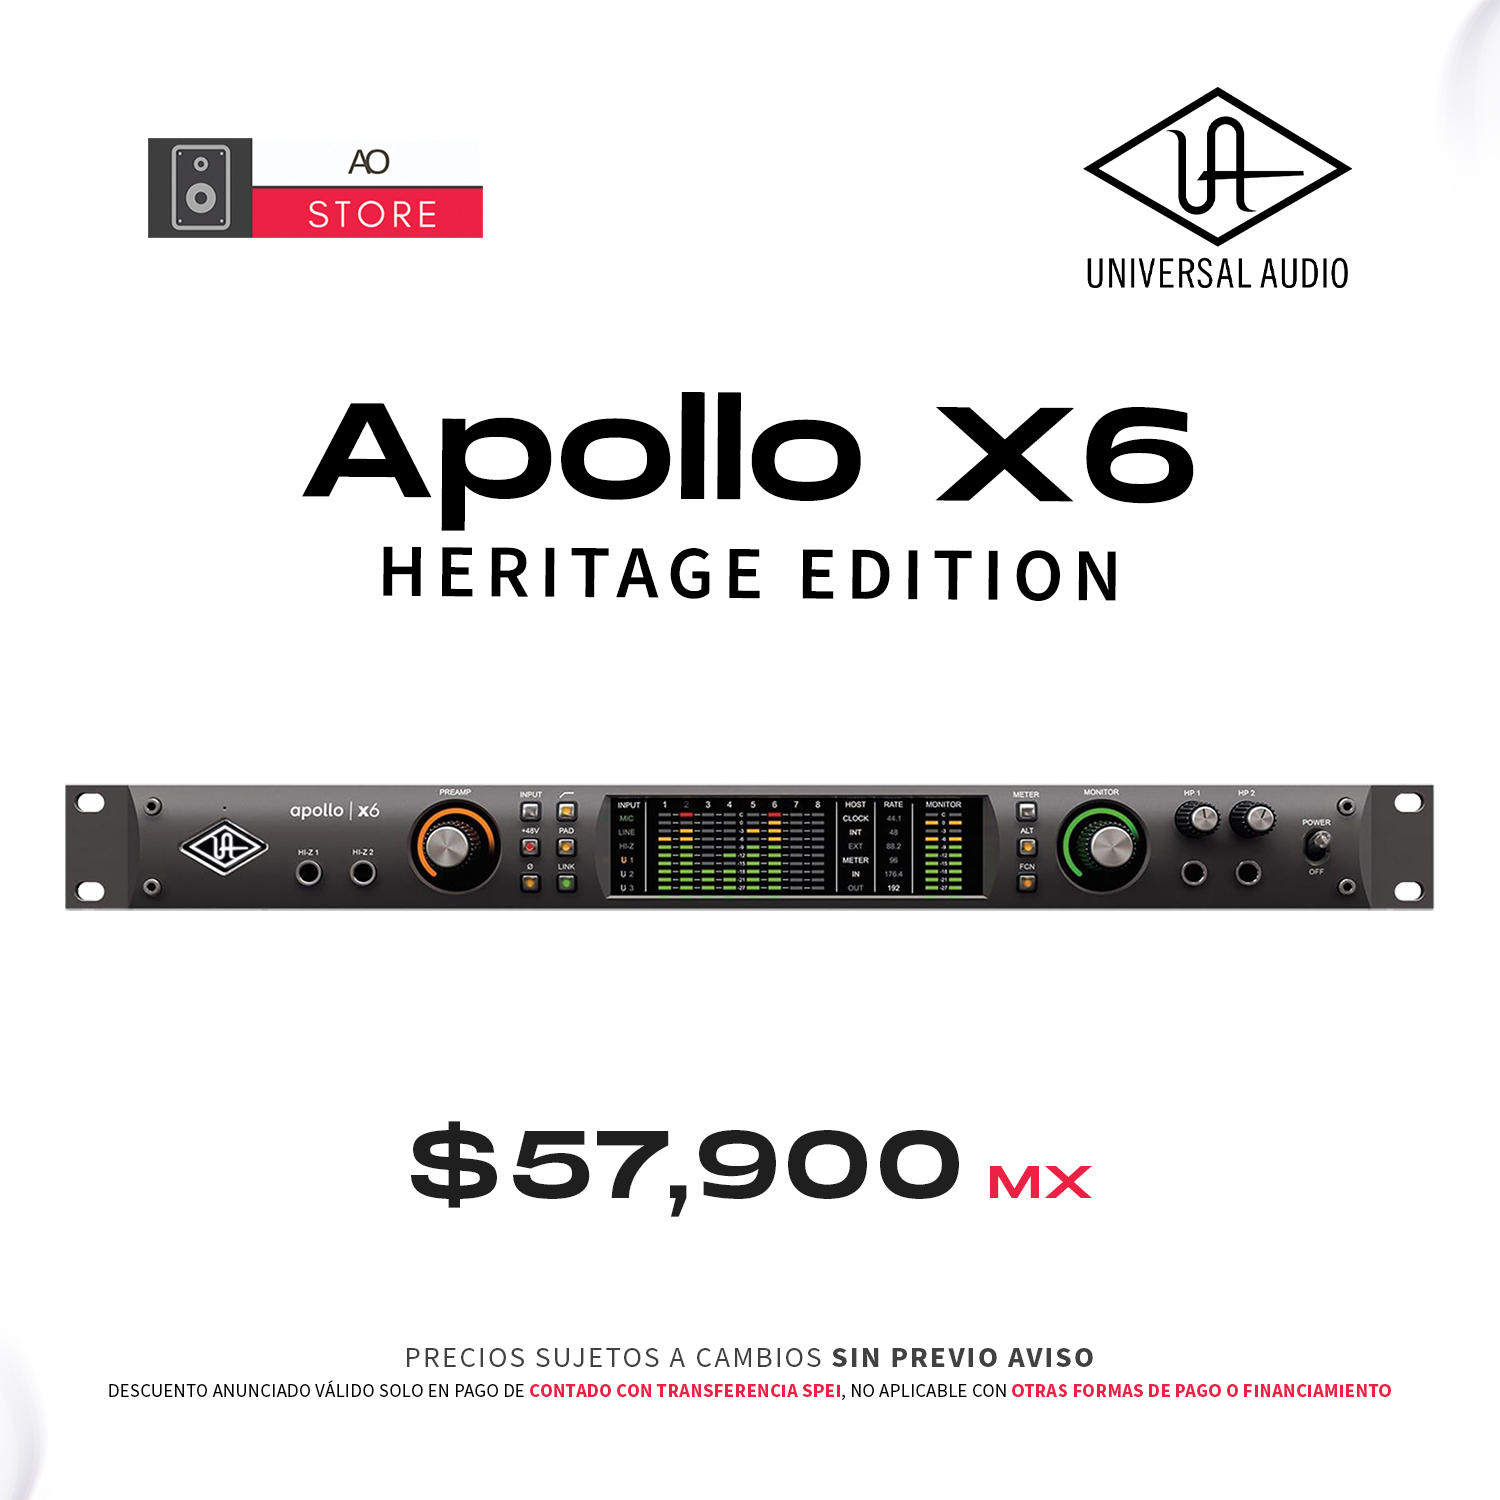 Heritage　Edition　Universal　Apollo　Audio　x6